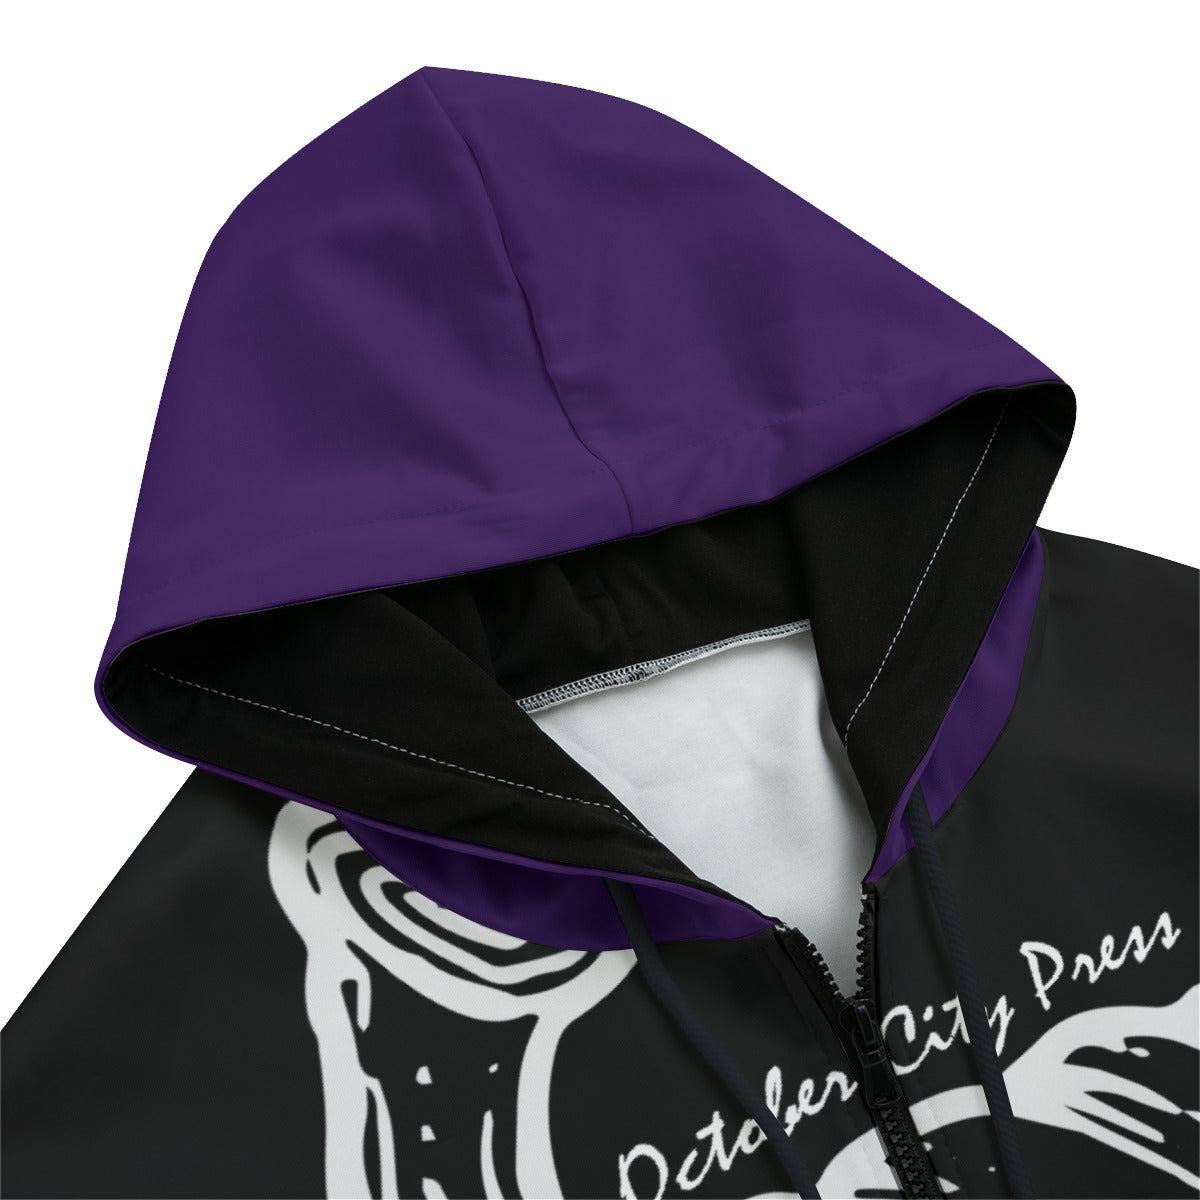 October City Press 2023 logo Hoodie Black (perfect lightweight windbreaker hoodie)